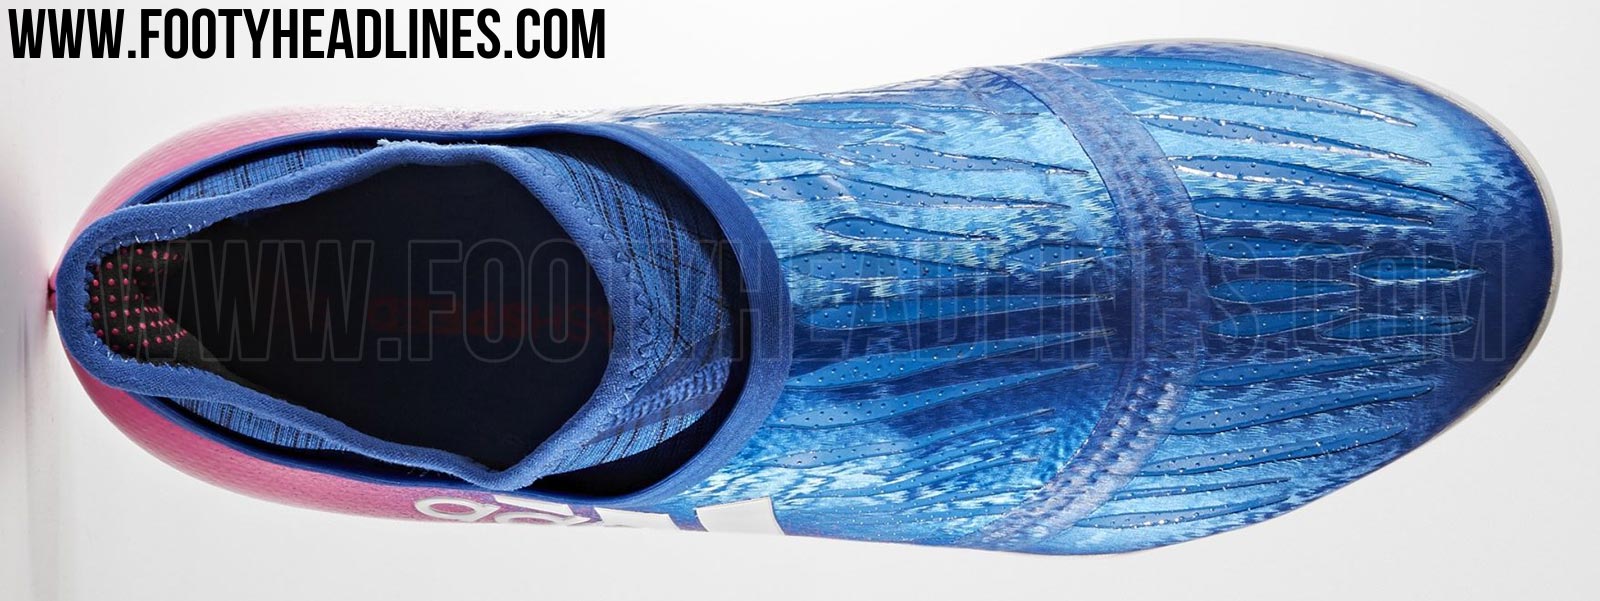 Insane Blue Blast Adidas 16+ PureChaos Indoor and Turf Leaked - Headlines